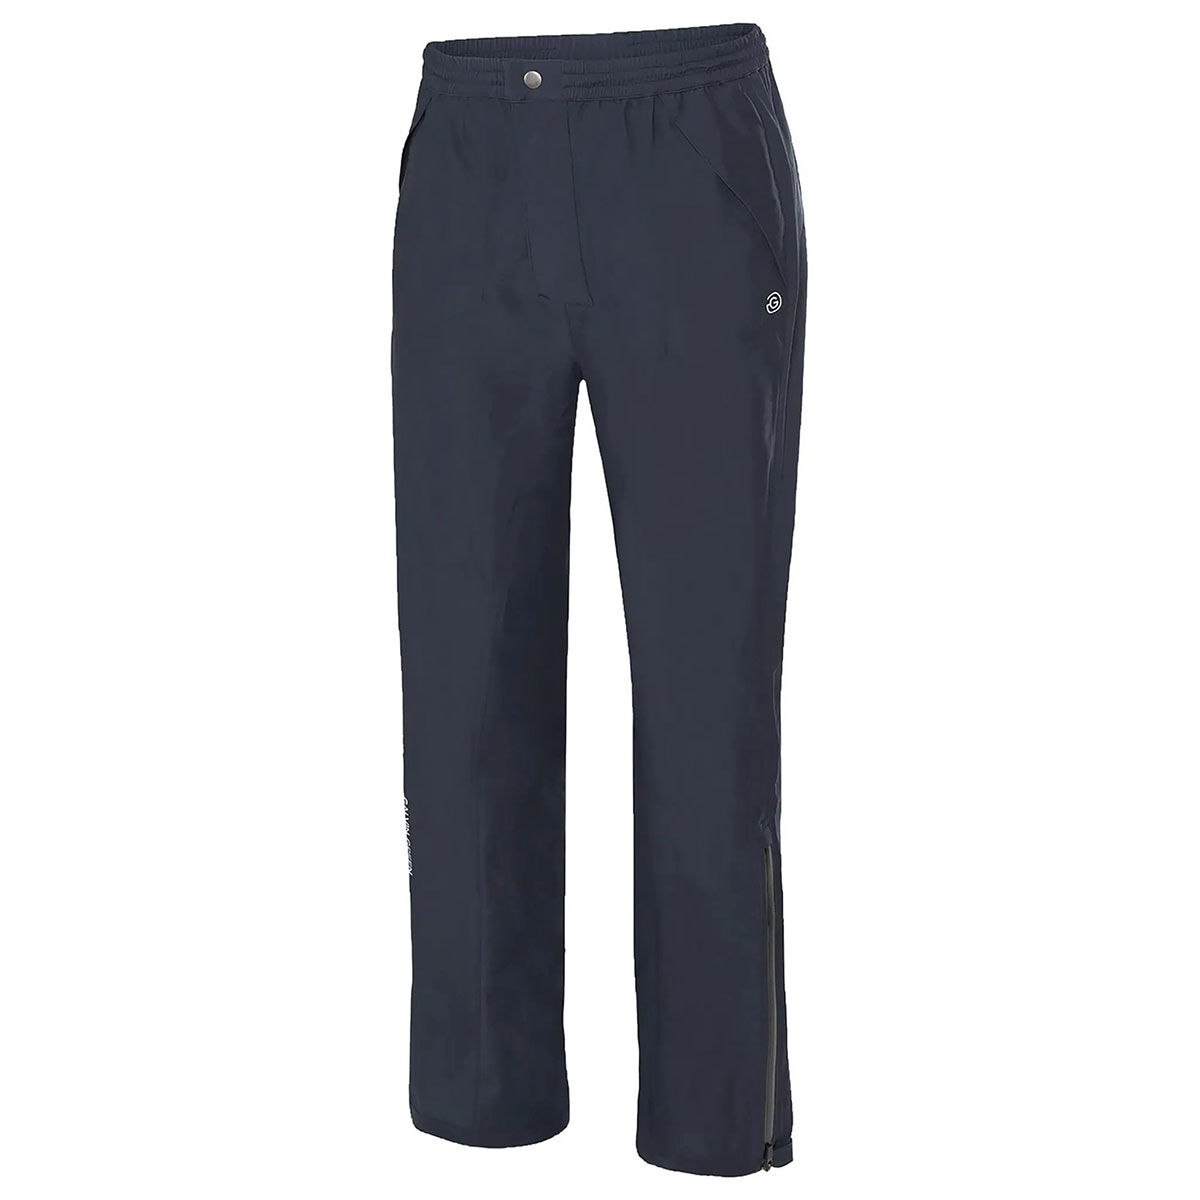 Galvin Green Navy Blue Lightweight Men’s Arthur Regular Fit Golf Trousers, Size: Medium | American Golf